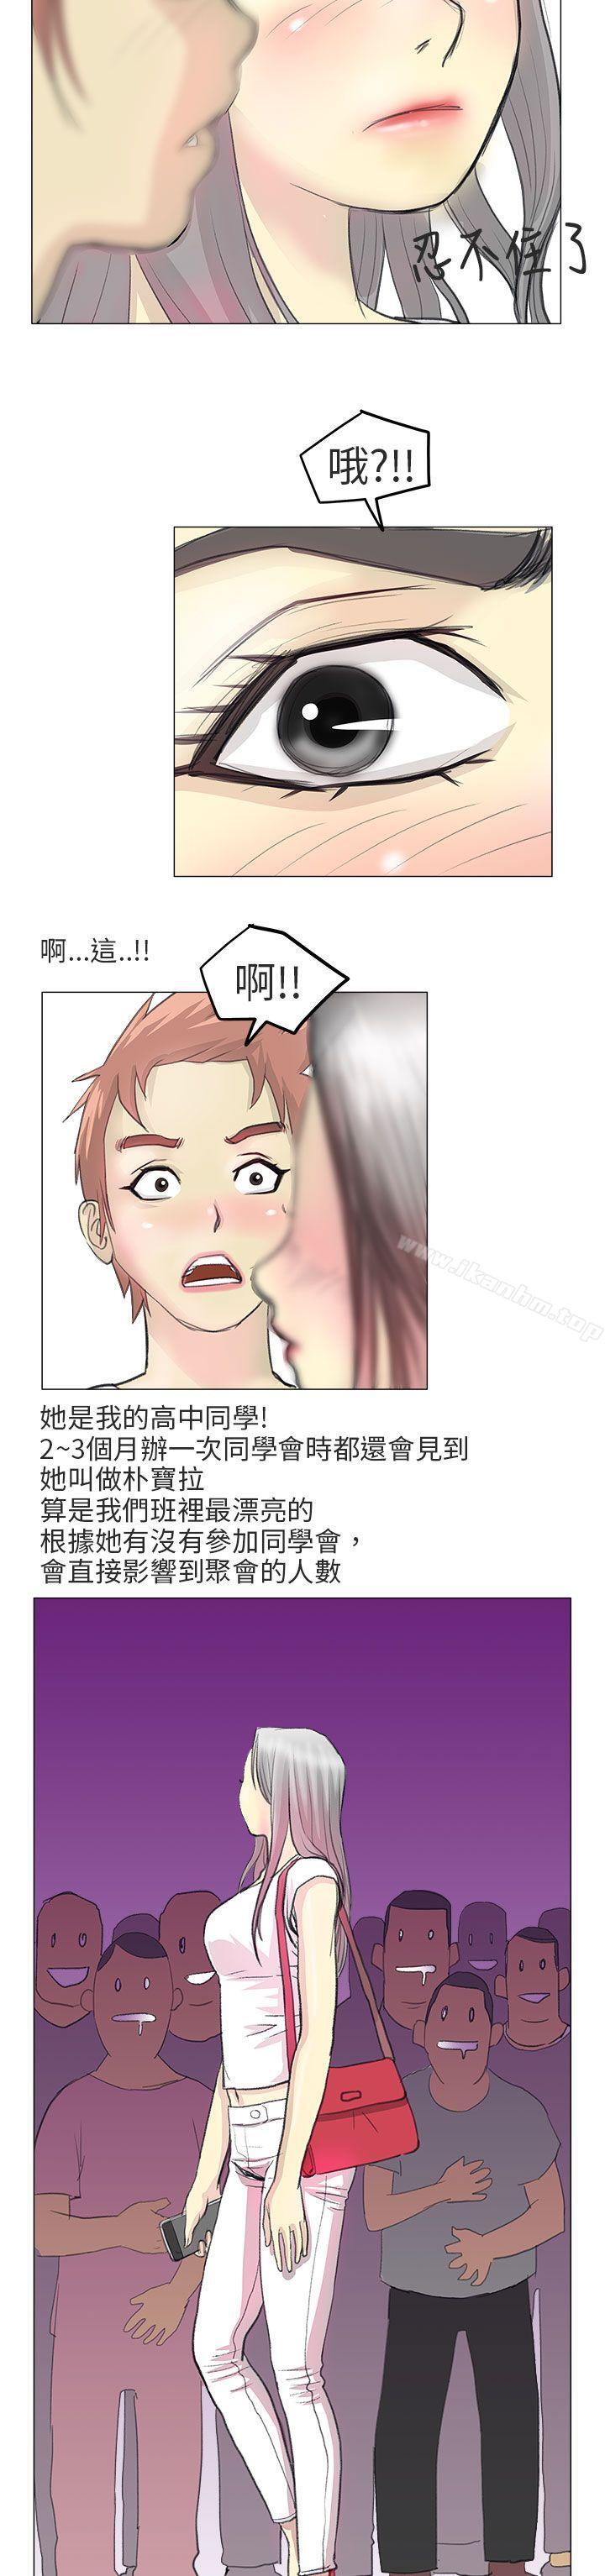 漫画韩国 秘密Story第二季   - 立即阅读 第二季 電車癡漢?(上)第16漫画图片